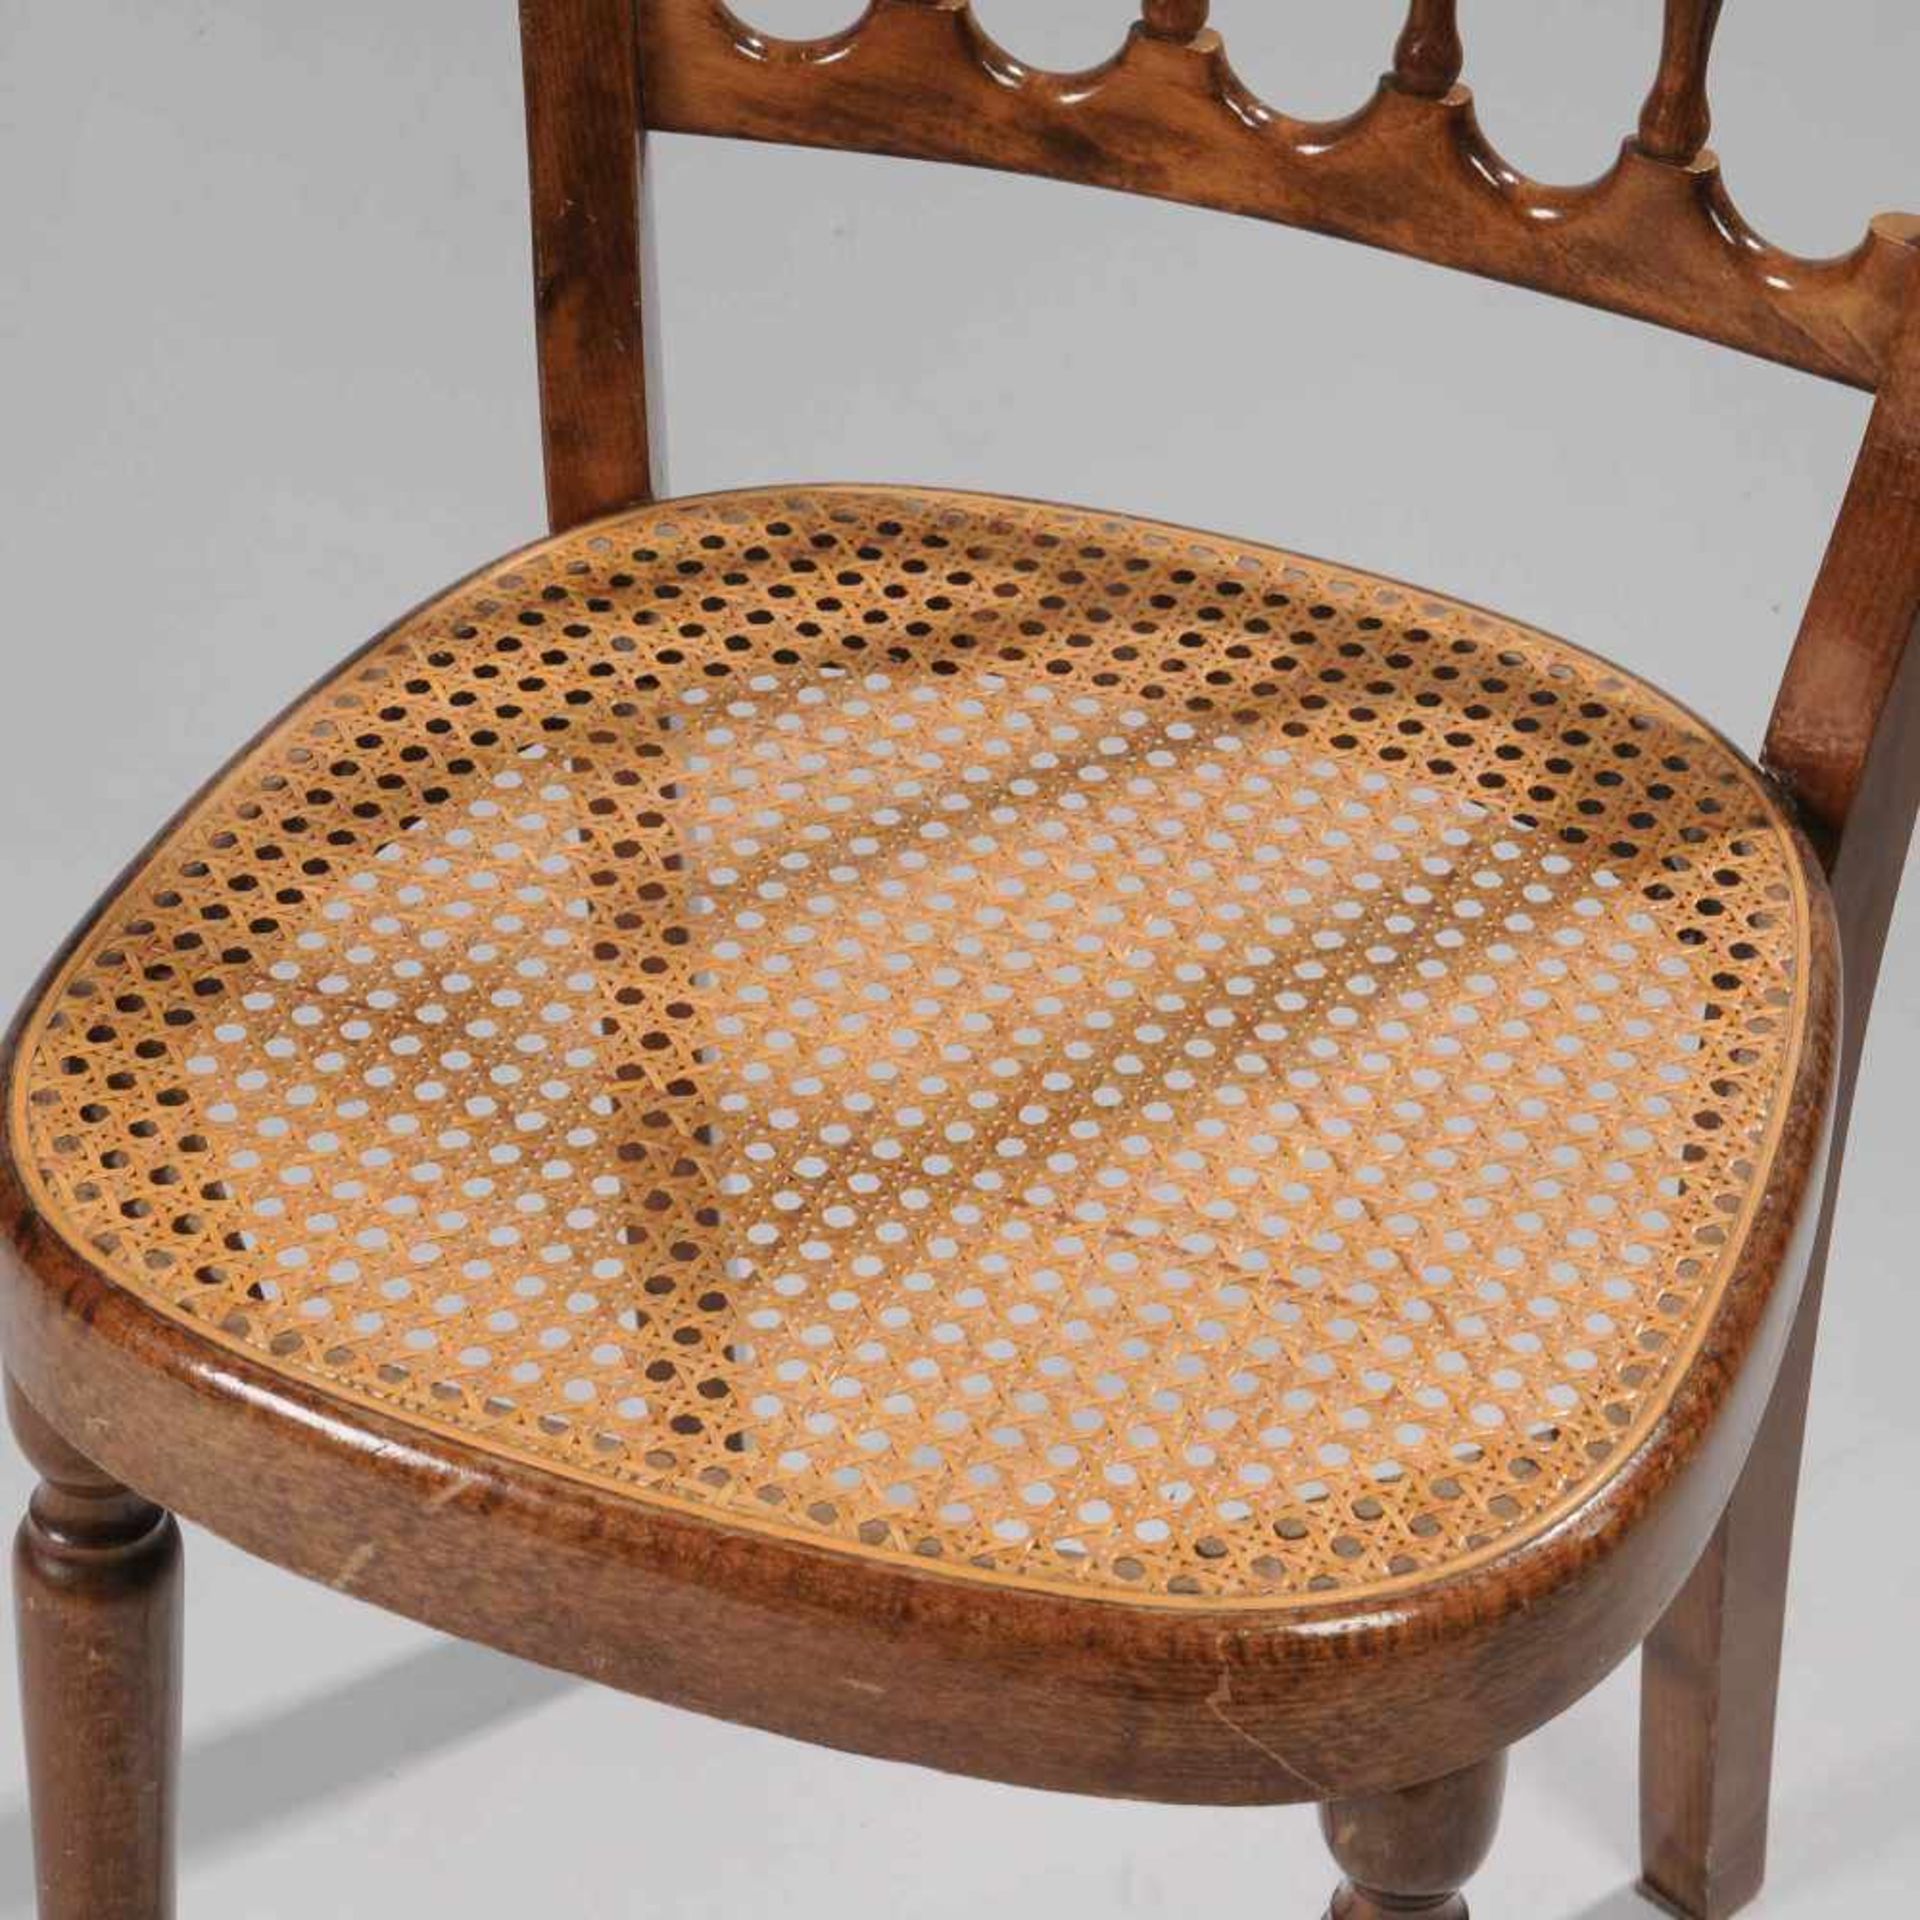 Stuhl Buche mittelbraun lasiert, tlw. gedrechseltes Gestell, Sitzfläche mit erneuertem Korbgeflecht, - Bild 4 aus 4